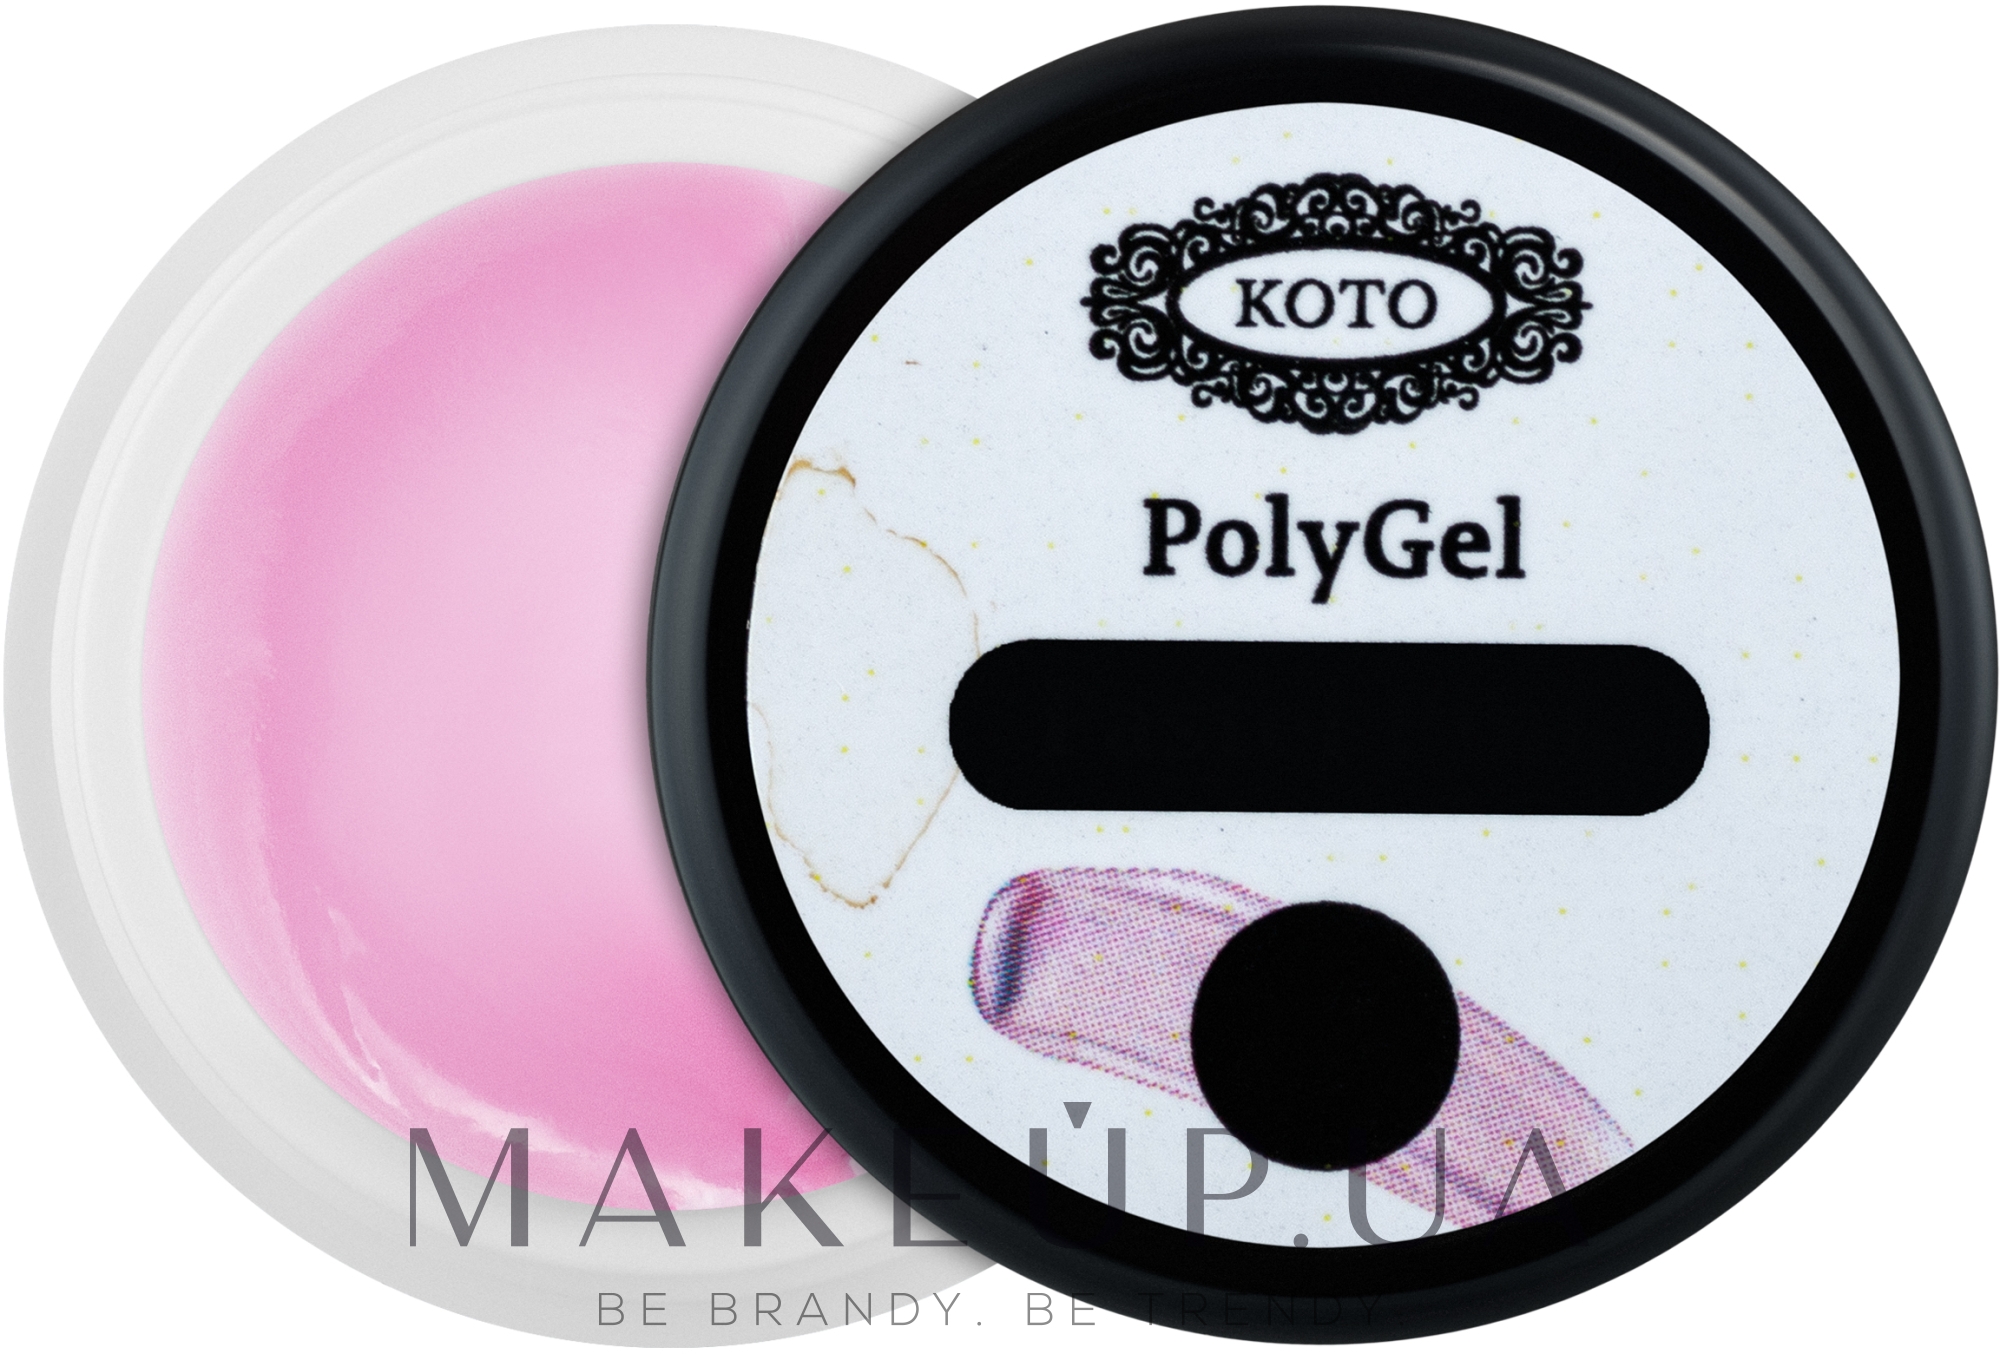 Полигель для ногтей, 5ml - Koto PolyGel — фото 05 - Pastel Pink